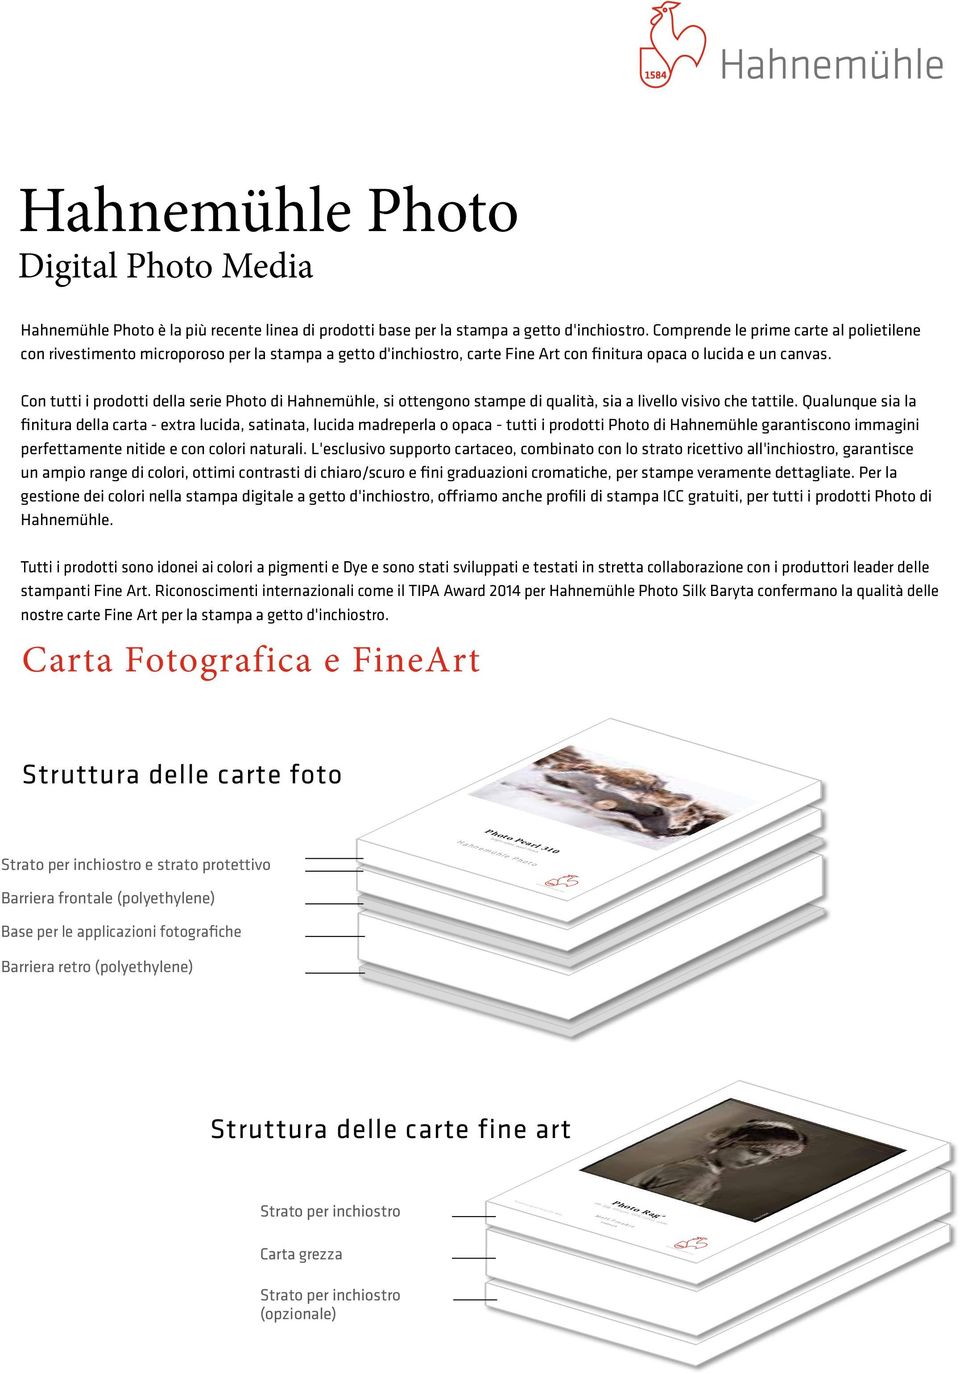 Con tutti i prodotti della serie Photo di Hahnemühle, si ottengono stampe di qualità, sia a livello visivo che tattile.